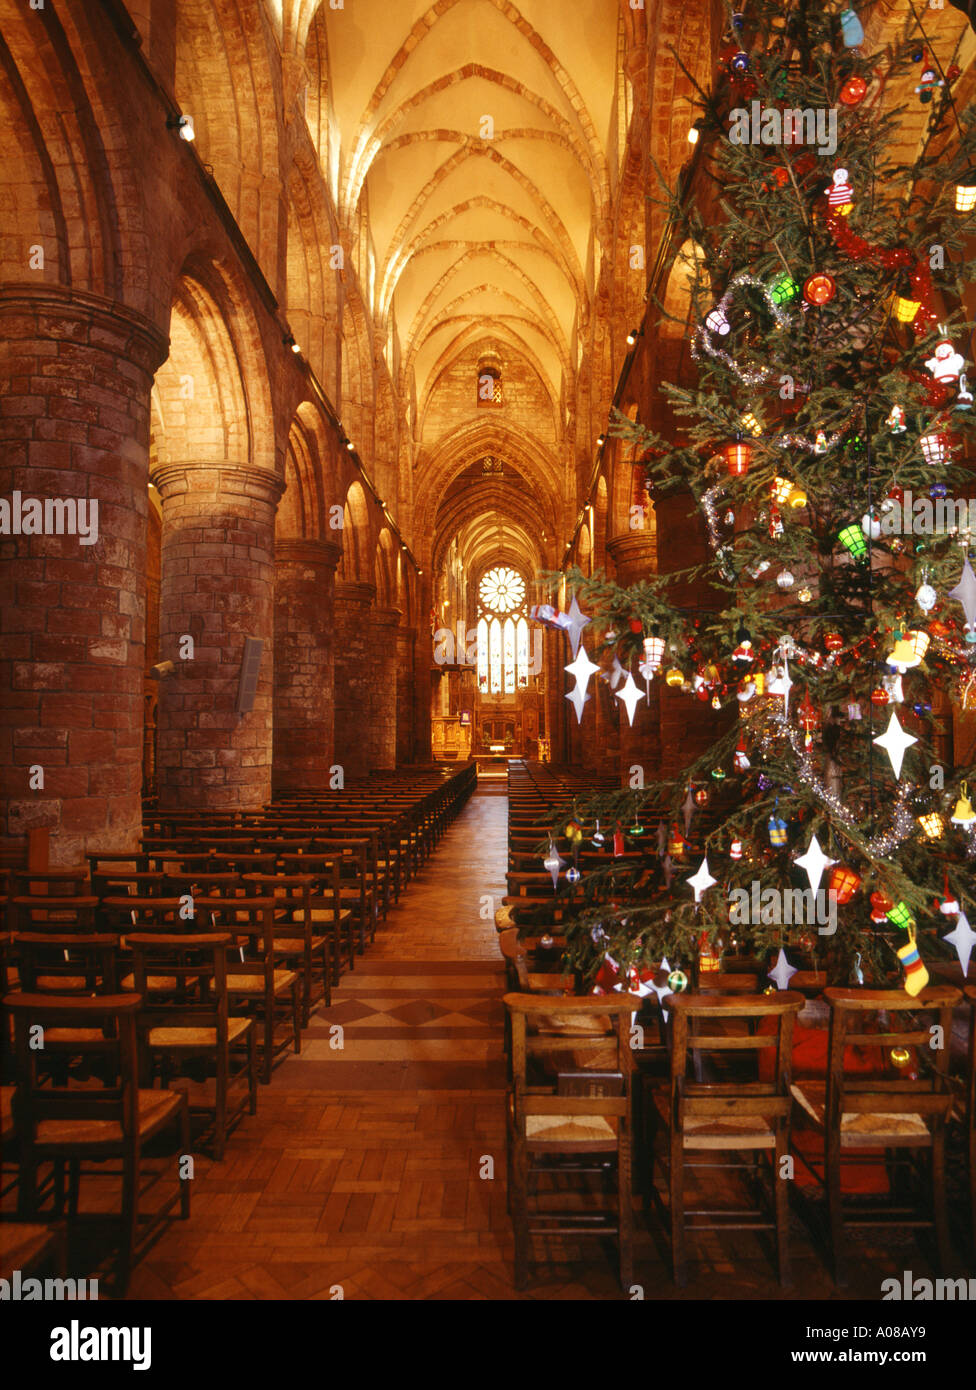 dh St Magnus Cathedral KIRKWALL ORKNEY Scottish Orkneys Cathedrals at Weihnachtsbaum und Gang innen Weihnachten Kirche Dekorationen Stockfoto